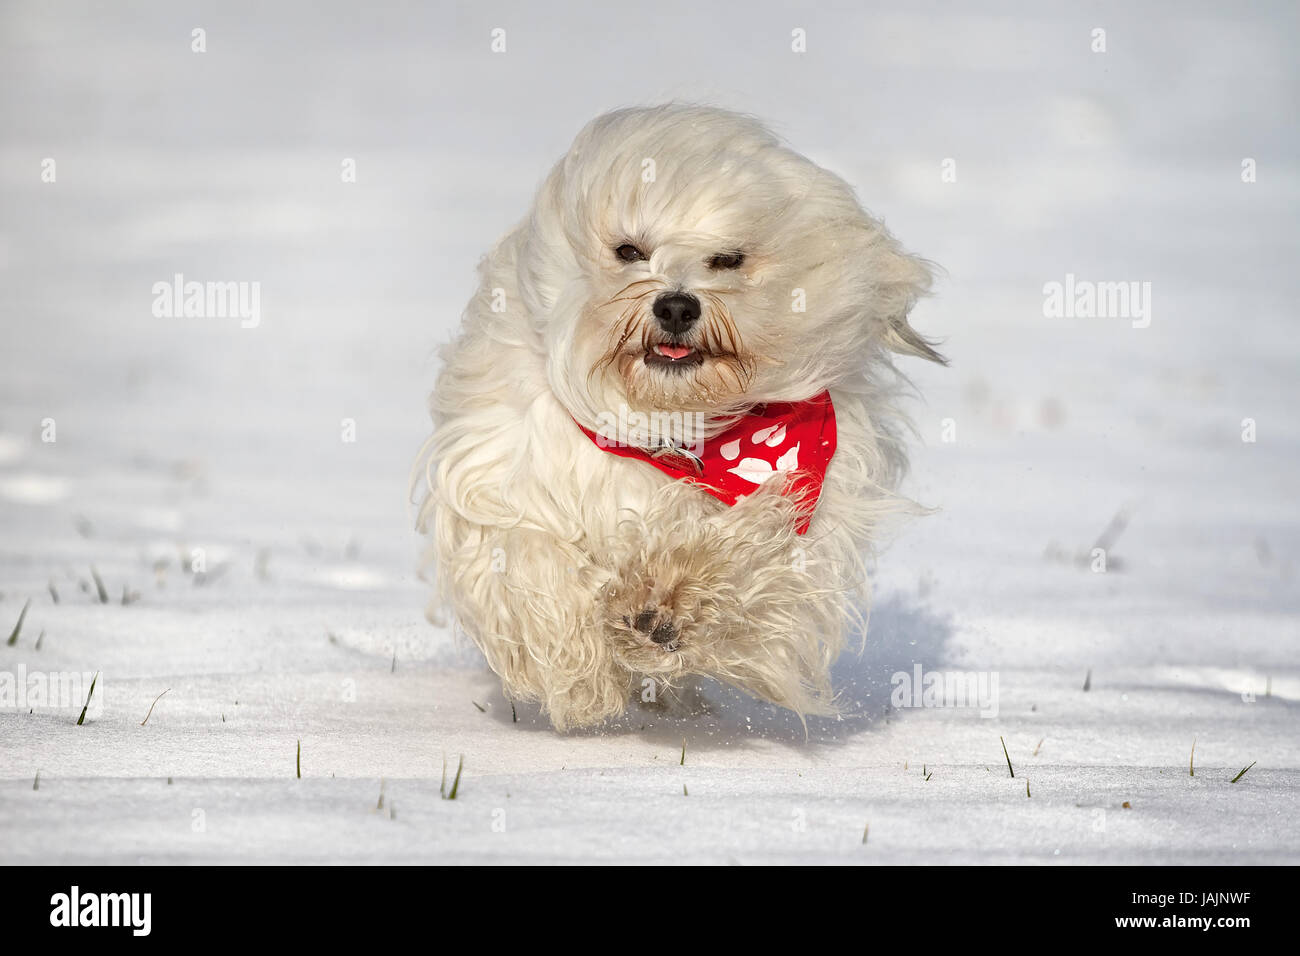 Ein kleiner Langhaar Hund mit einem roten Halstuch rennt durch den Schnee. Stock Photo